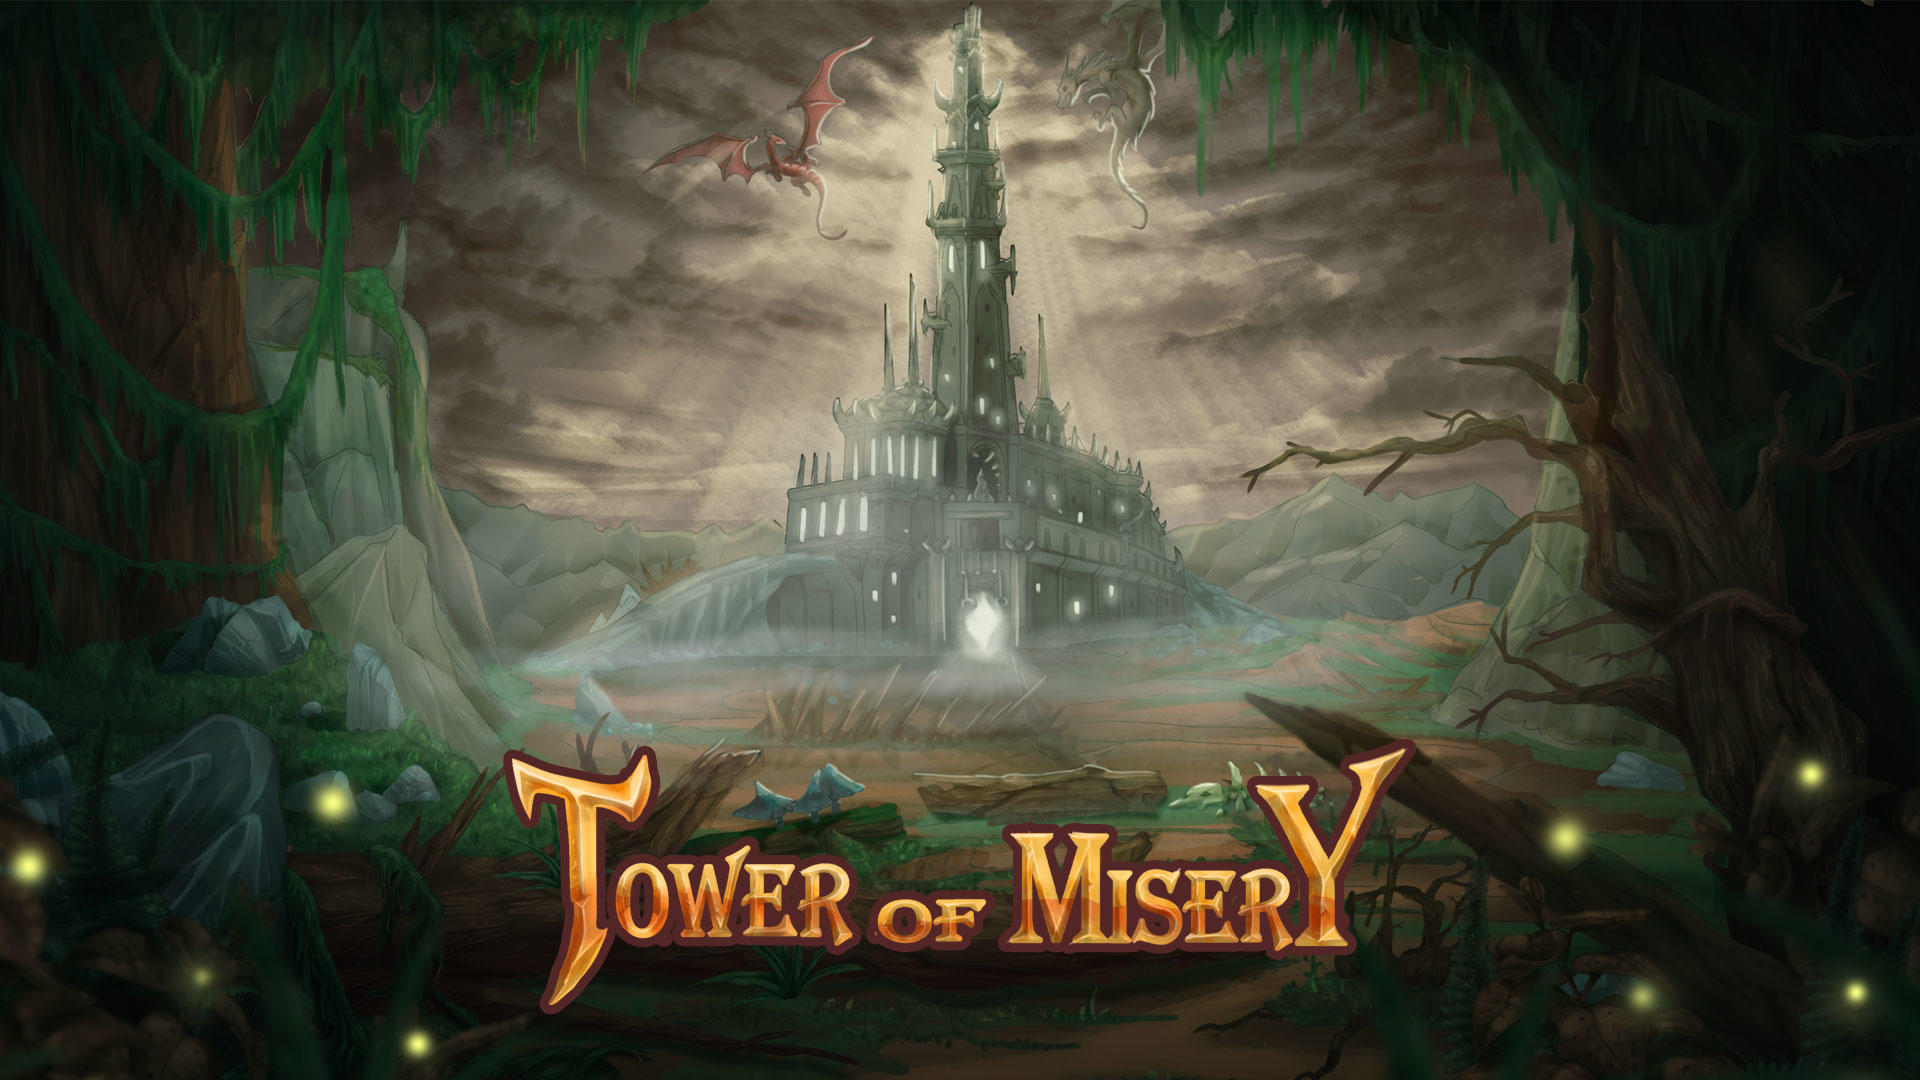 Screenshot 1 of Tower of Misery: Clicker vô tận của ngục tối 2.85